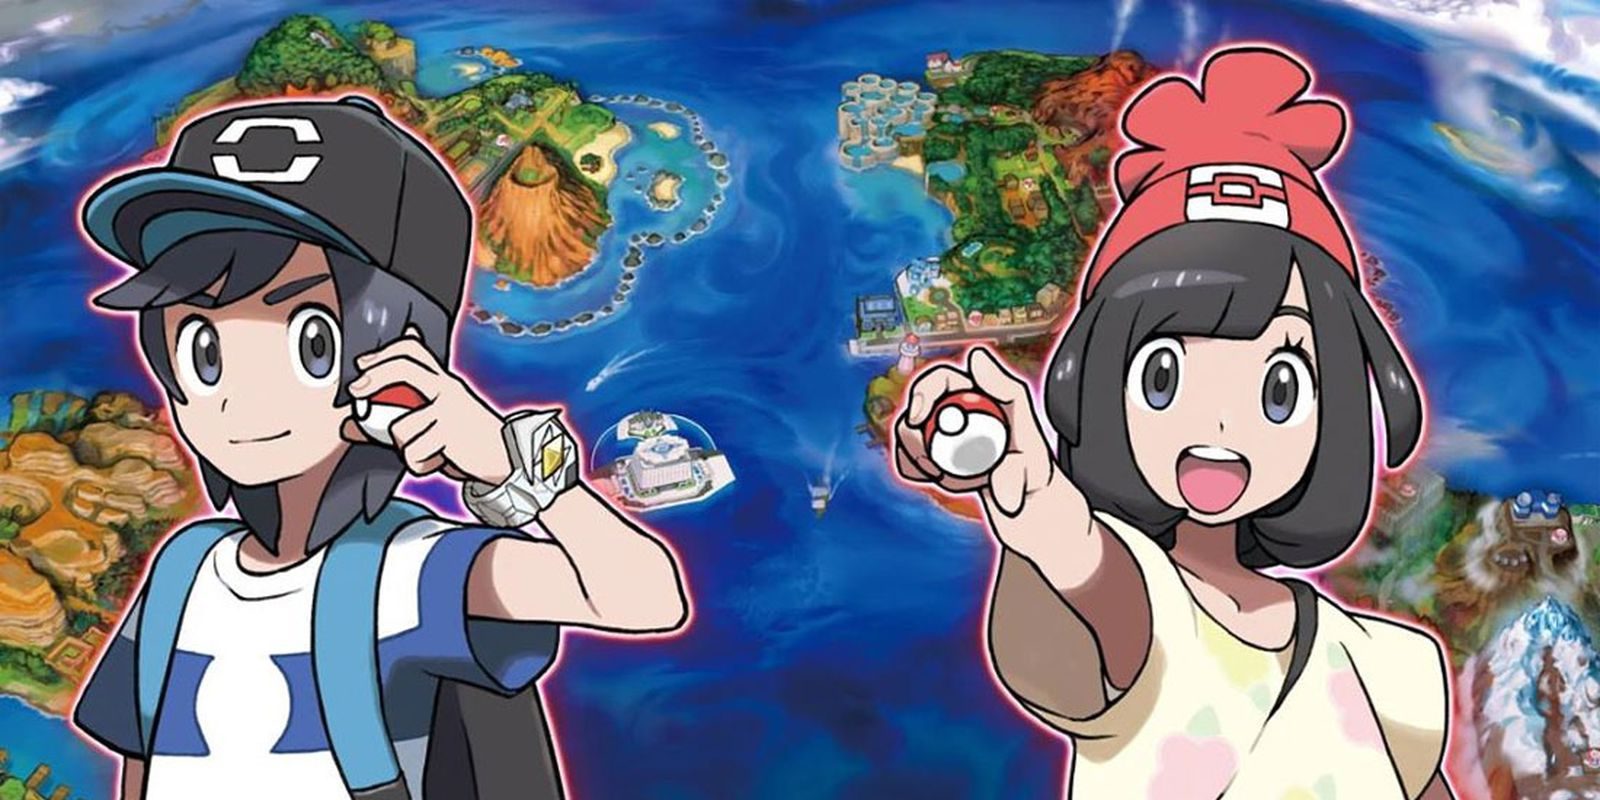 Habrá nueva infornación de 'Pokémon Sol' y Pokémon Luna' el 1 de julio